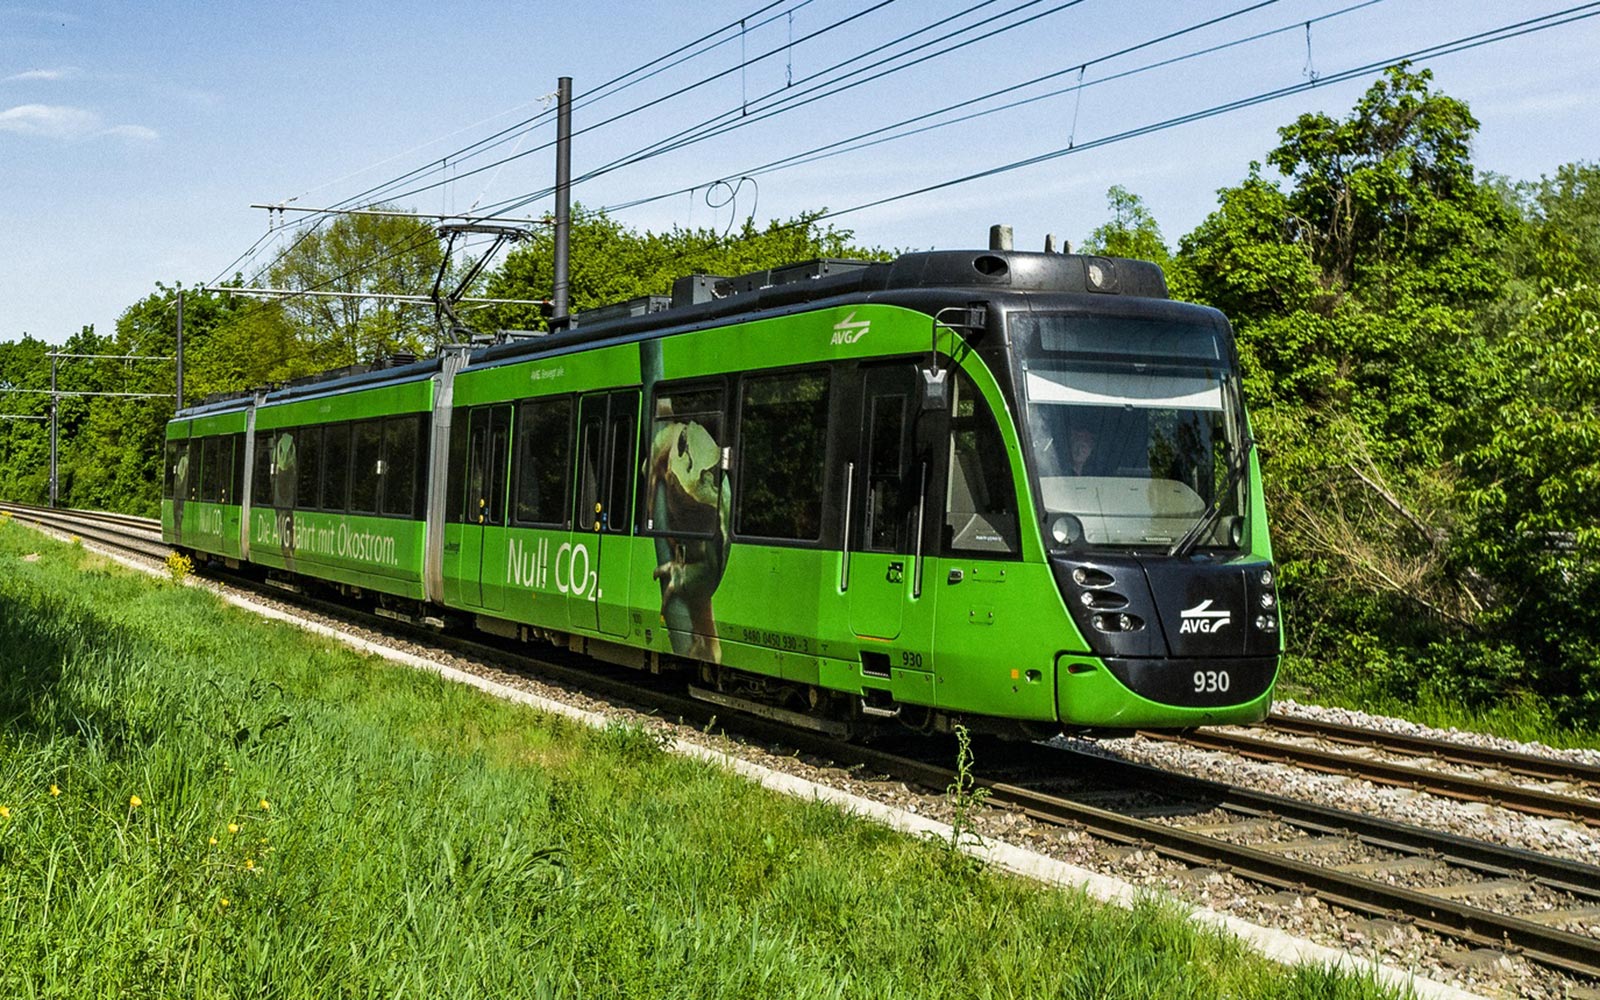 Grüne AVG-Straßenbahn im Grünen, mit Wiese links und Bäumen rechts von den Gleisen